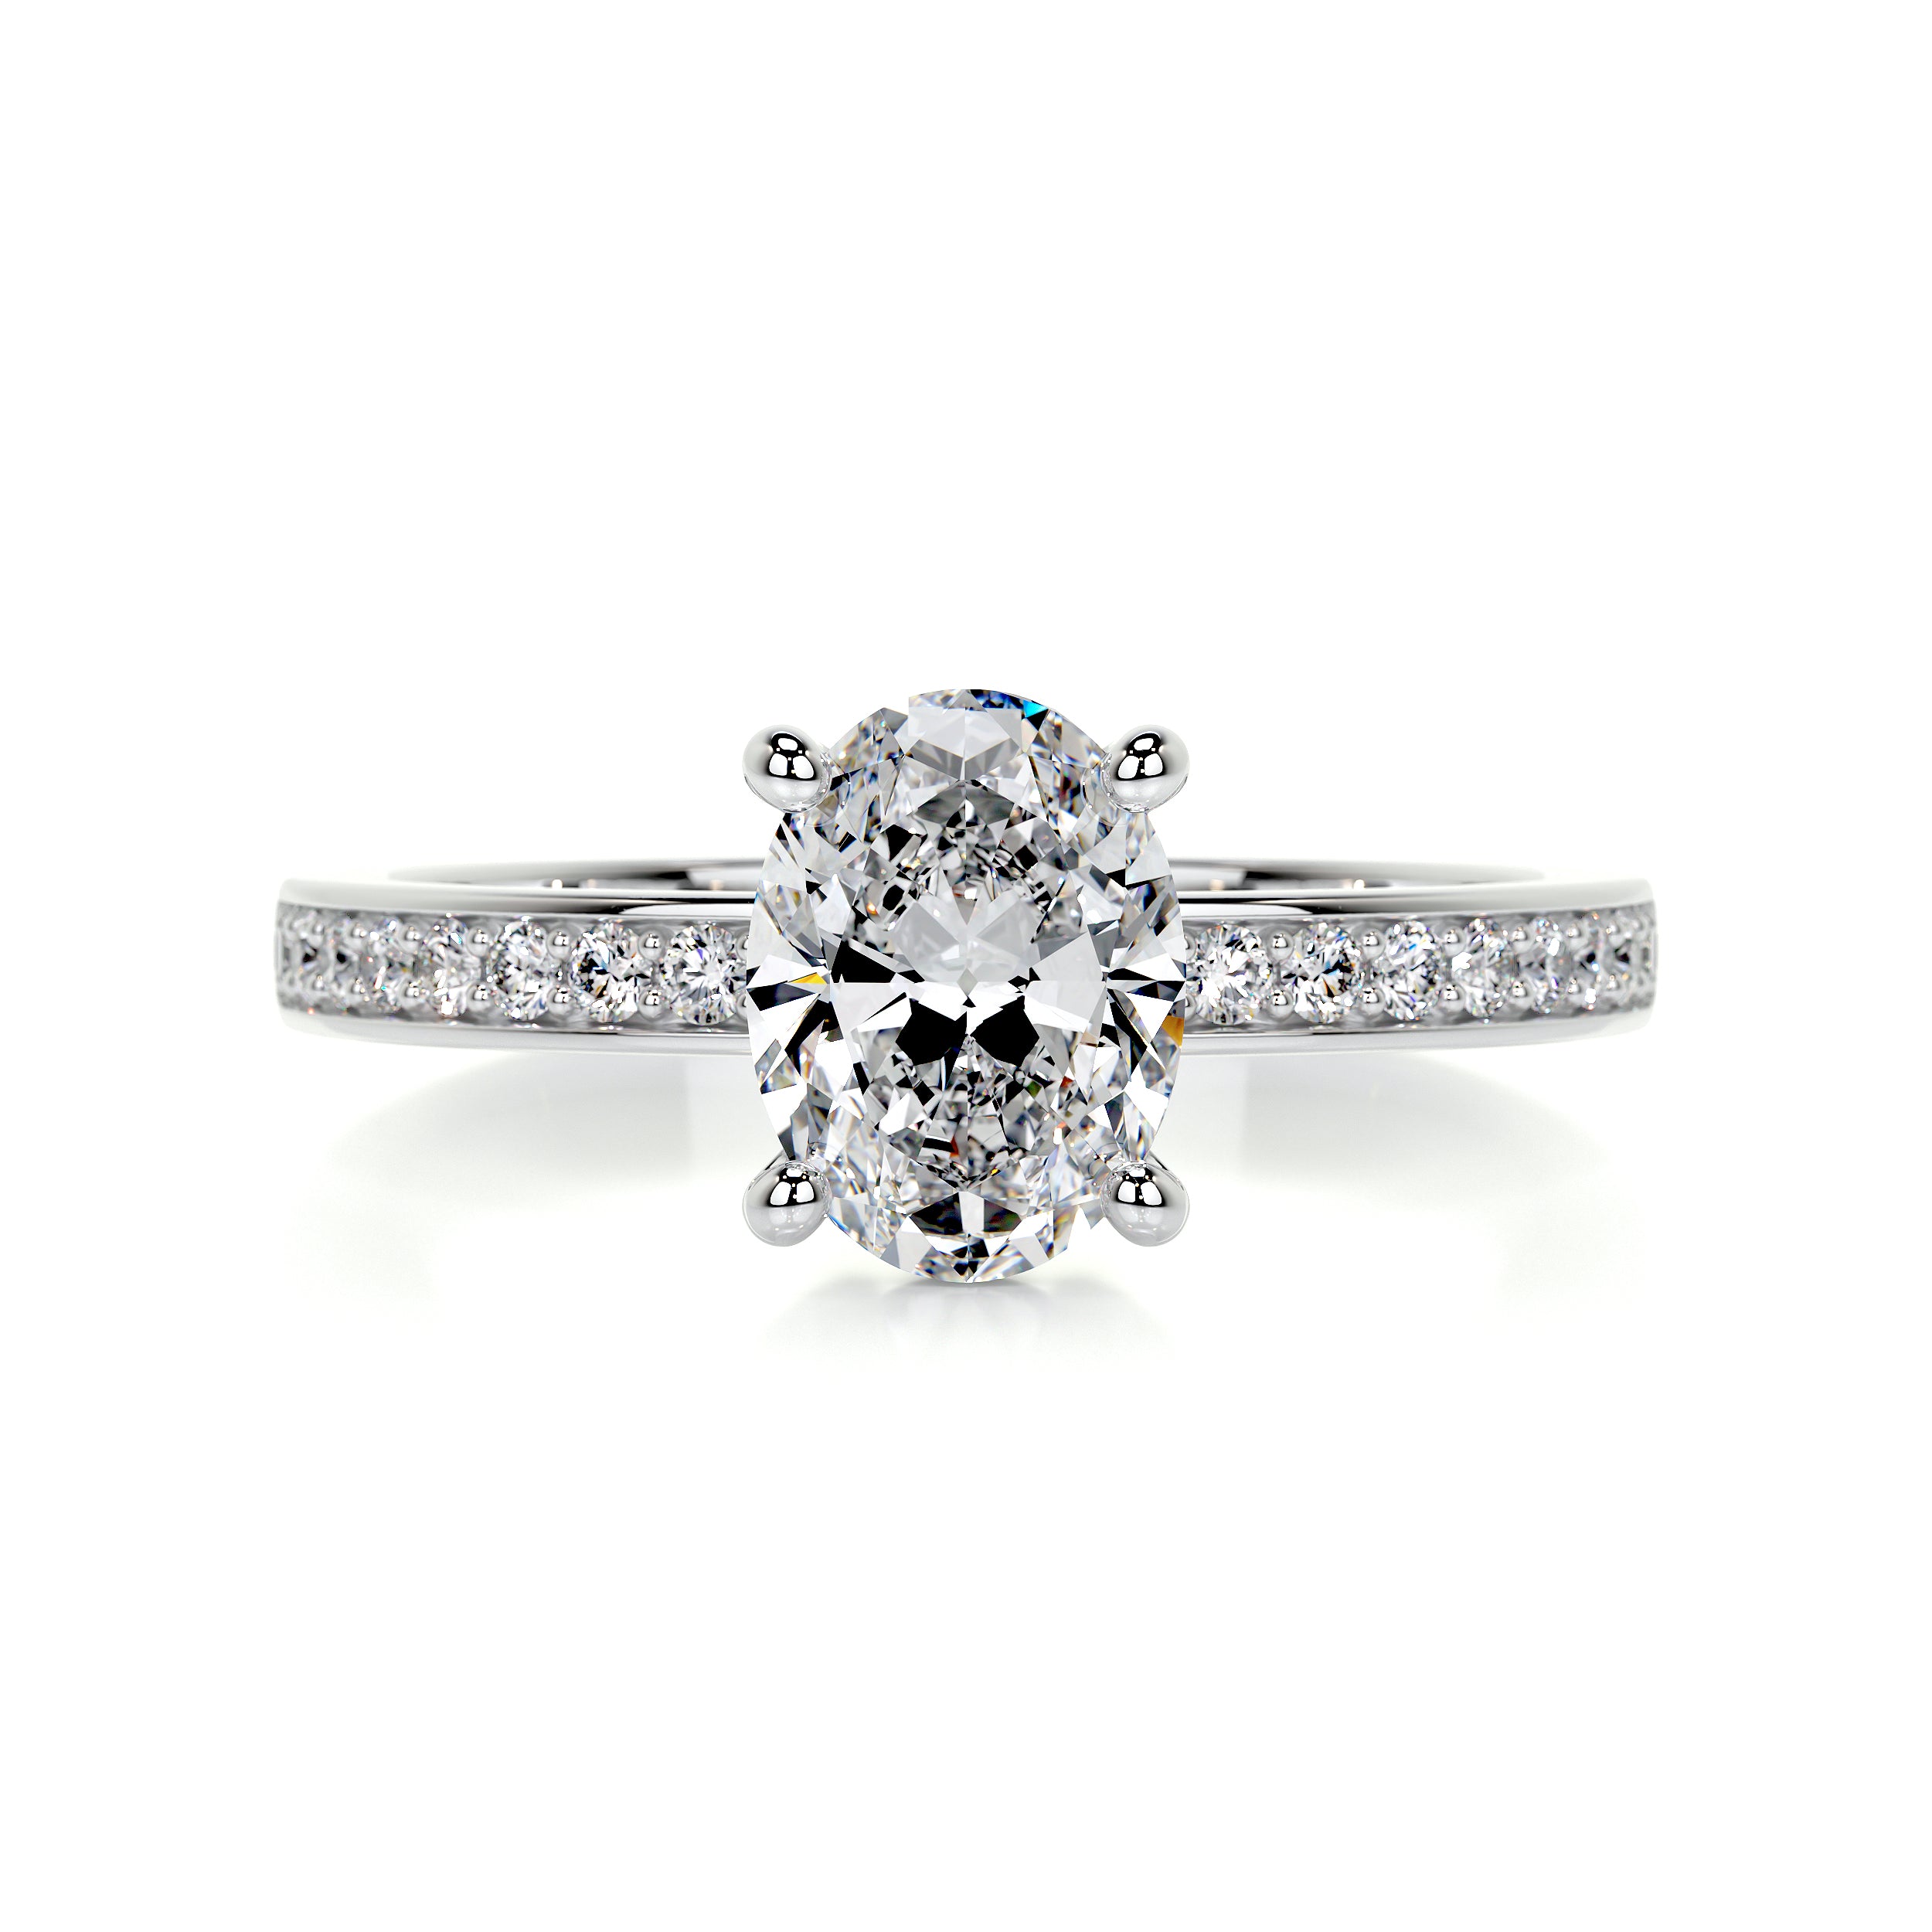 Giselle Diamond Engagement Ring   (1.16 Carat) -18K White Gold